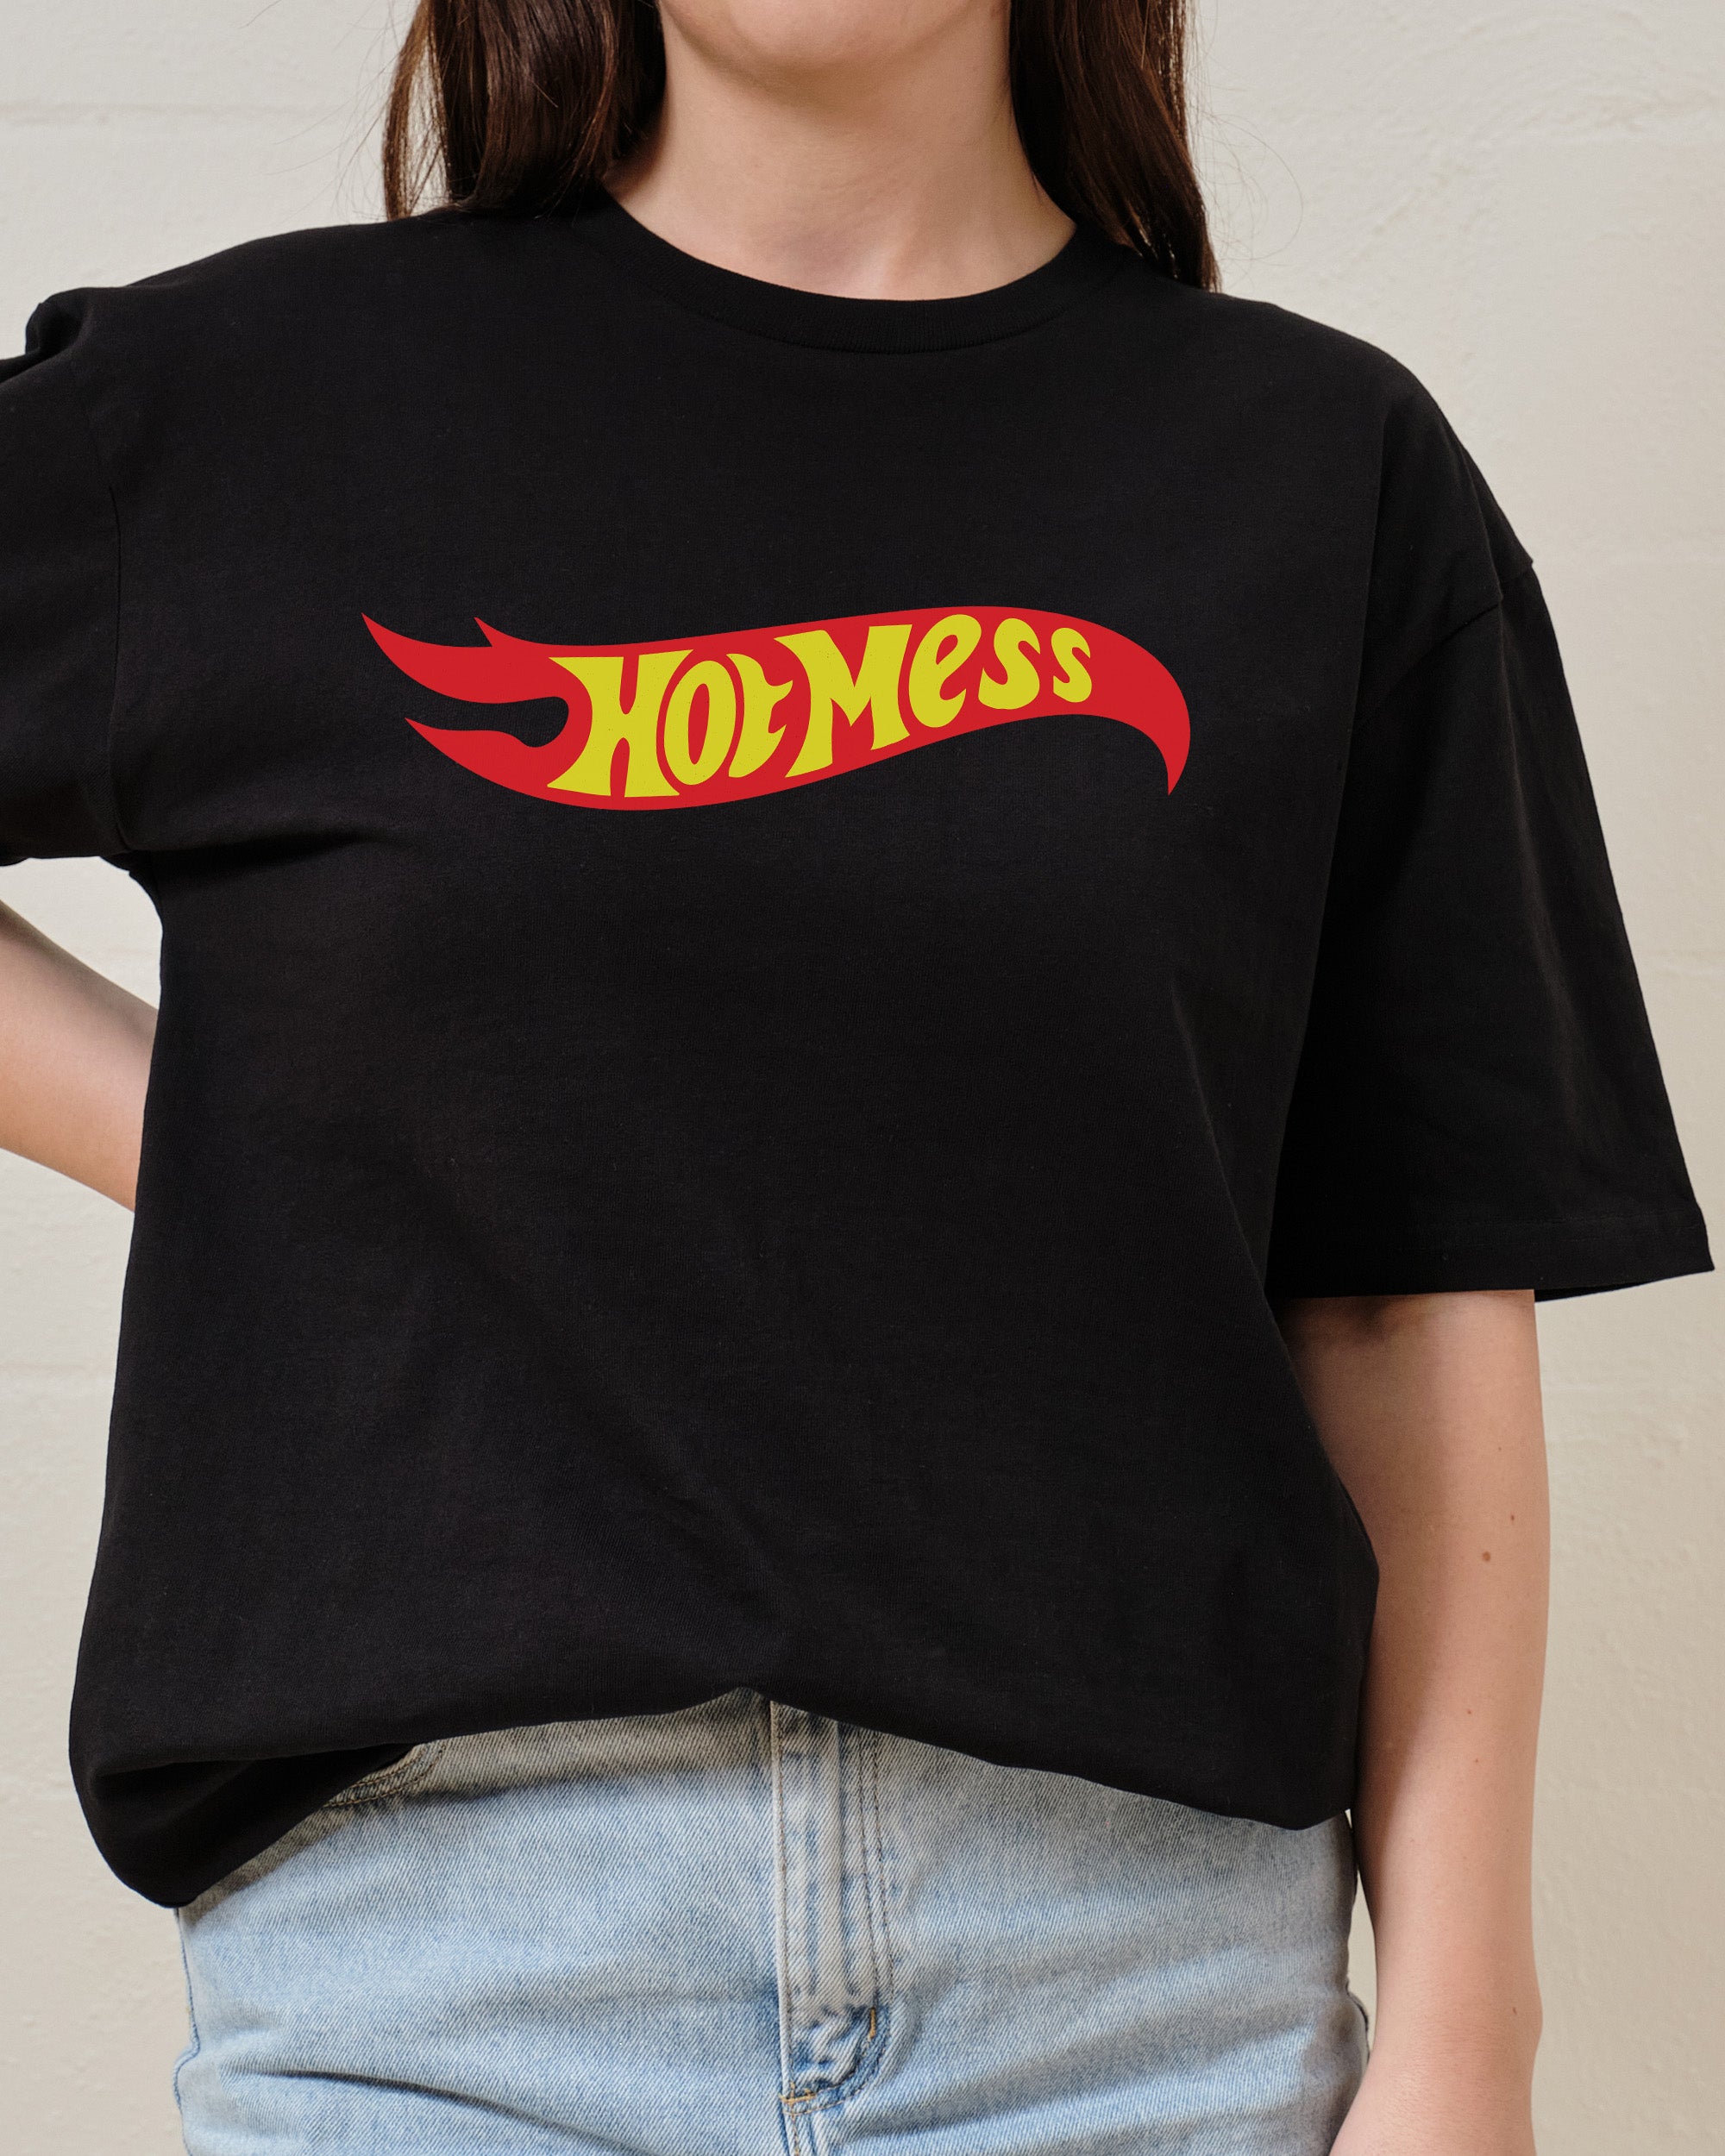 Hot Mess T-Shirt Australia Online